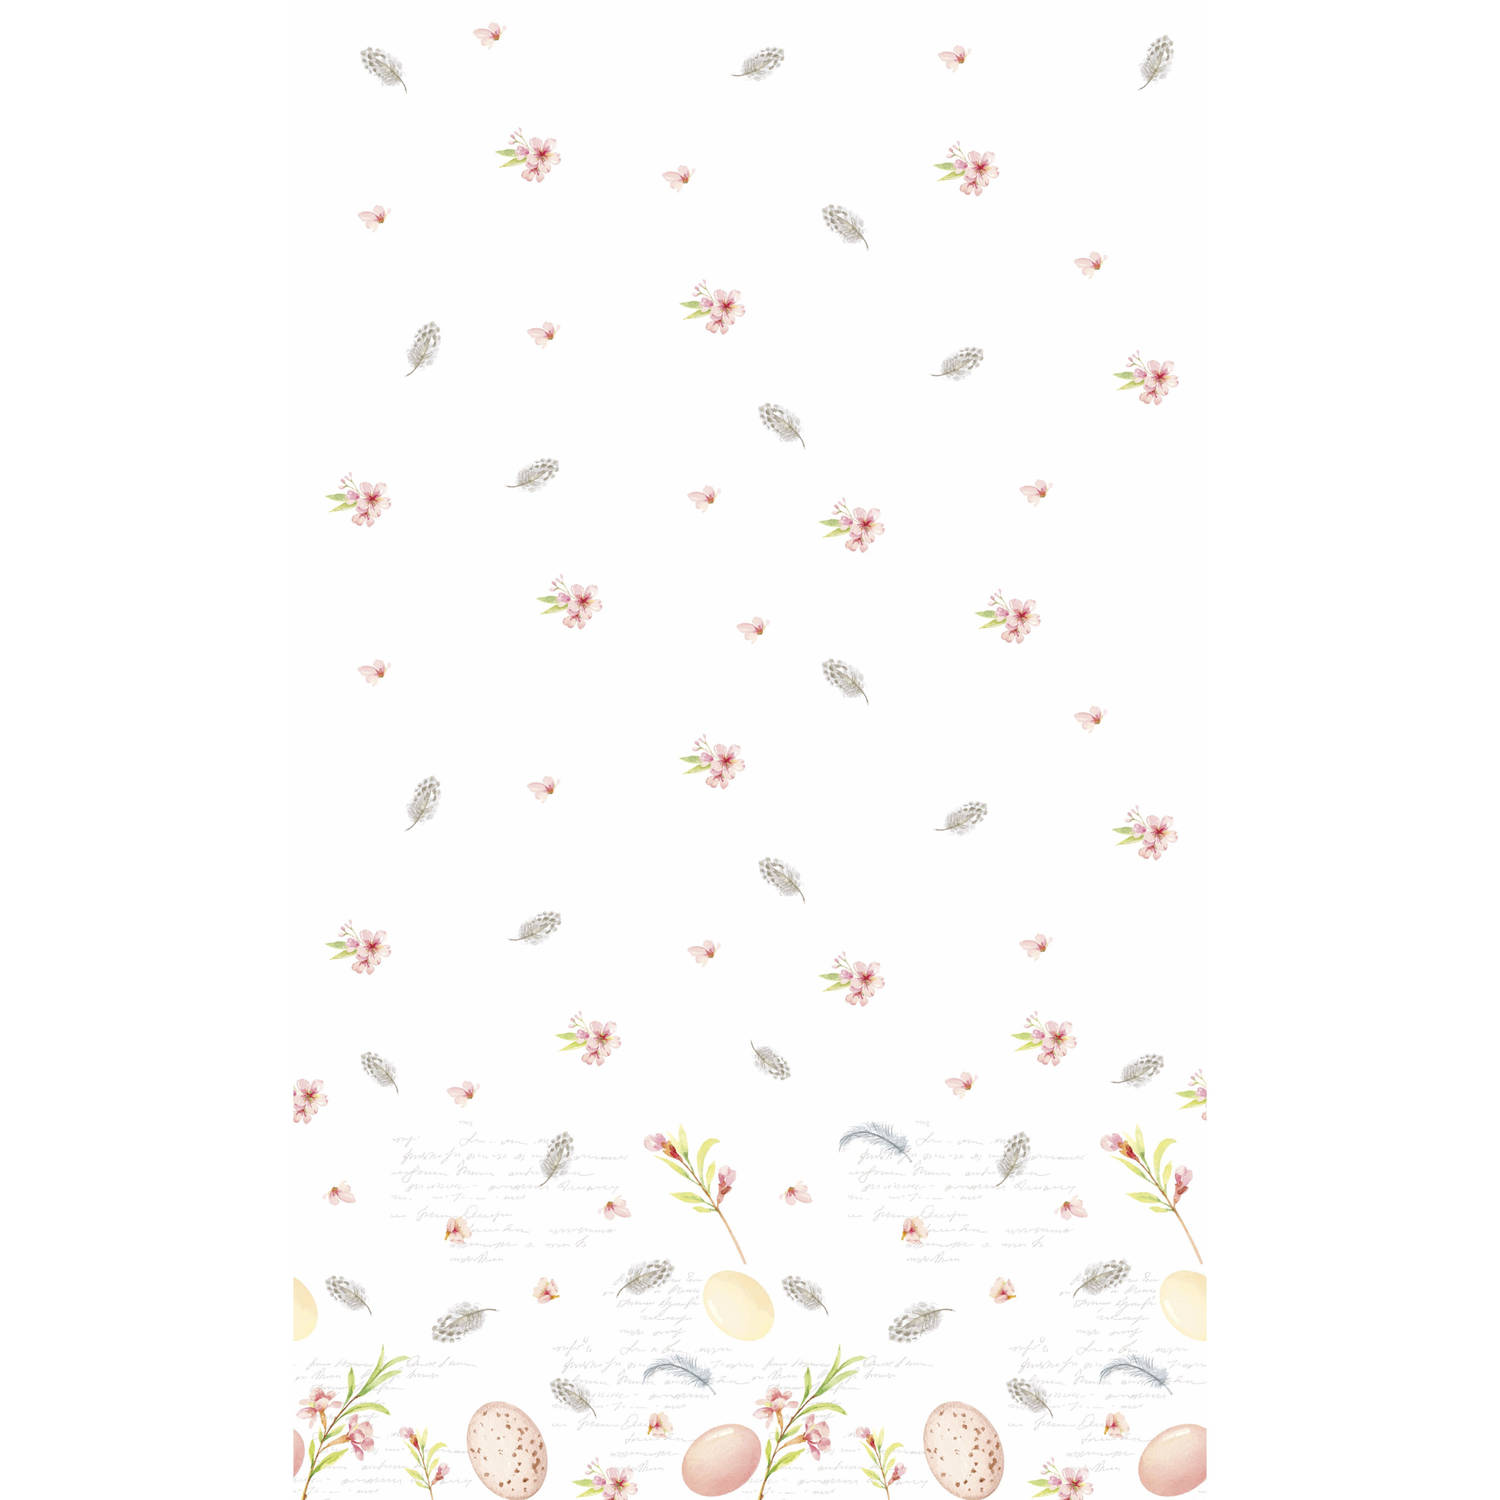 Pasen Tafelkleed/tafellaken Paaseieren Wit/roze 138 X 220 Cm - Feesttafelkleden